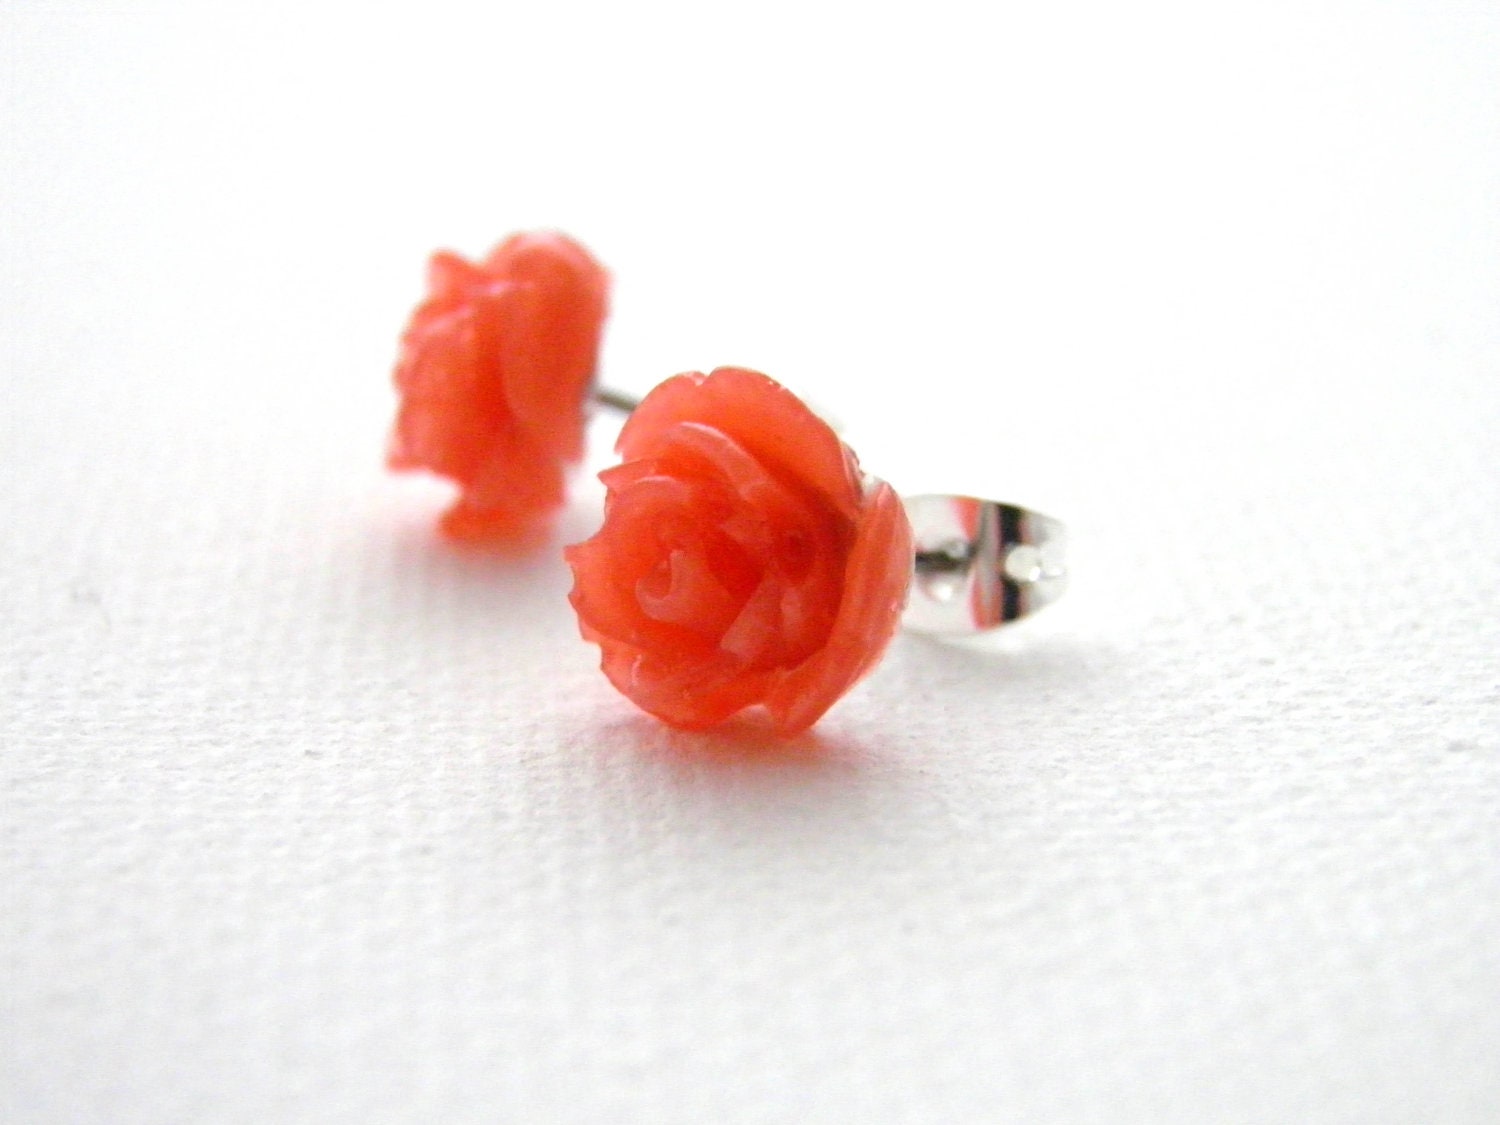 Coral Rose Earrings